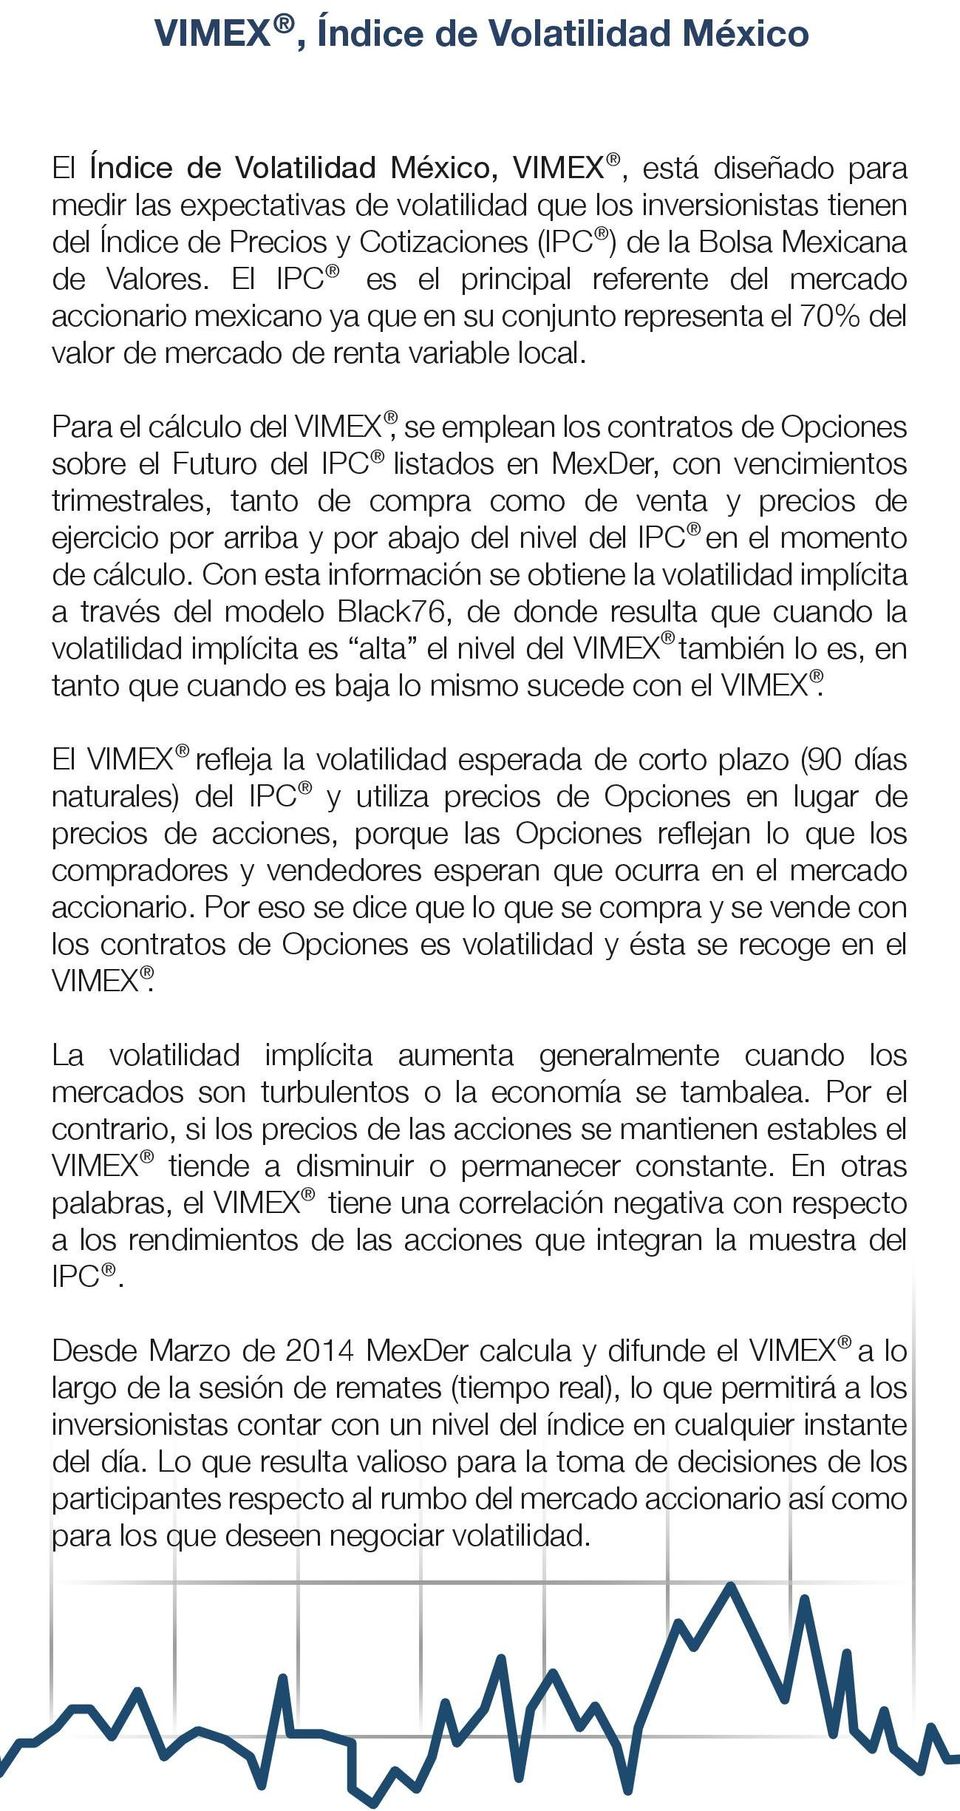 Para el cálculo del VIMEX, se emplean los contratos de Opciones sobre el Futuro del IPC listados en MexDer, con vencimientos trimestrales, tanto de compra como de venta y precios de ejercicio por